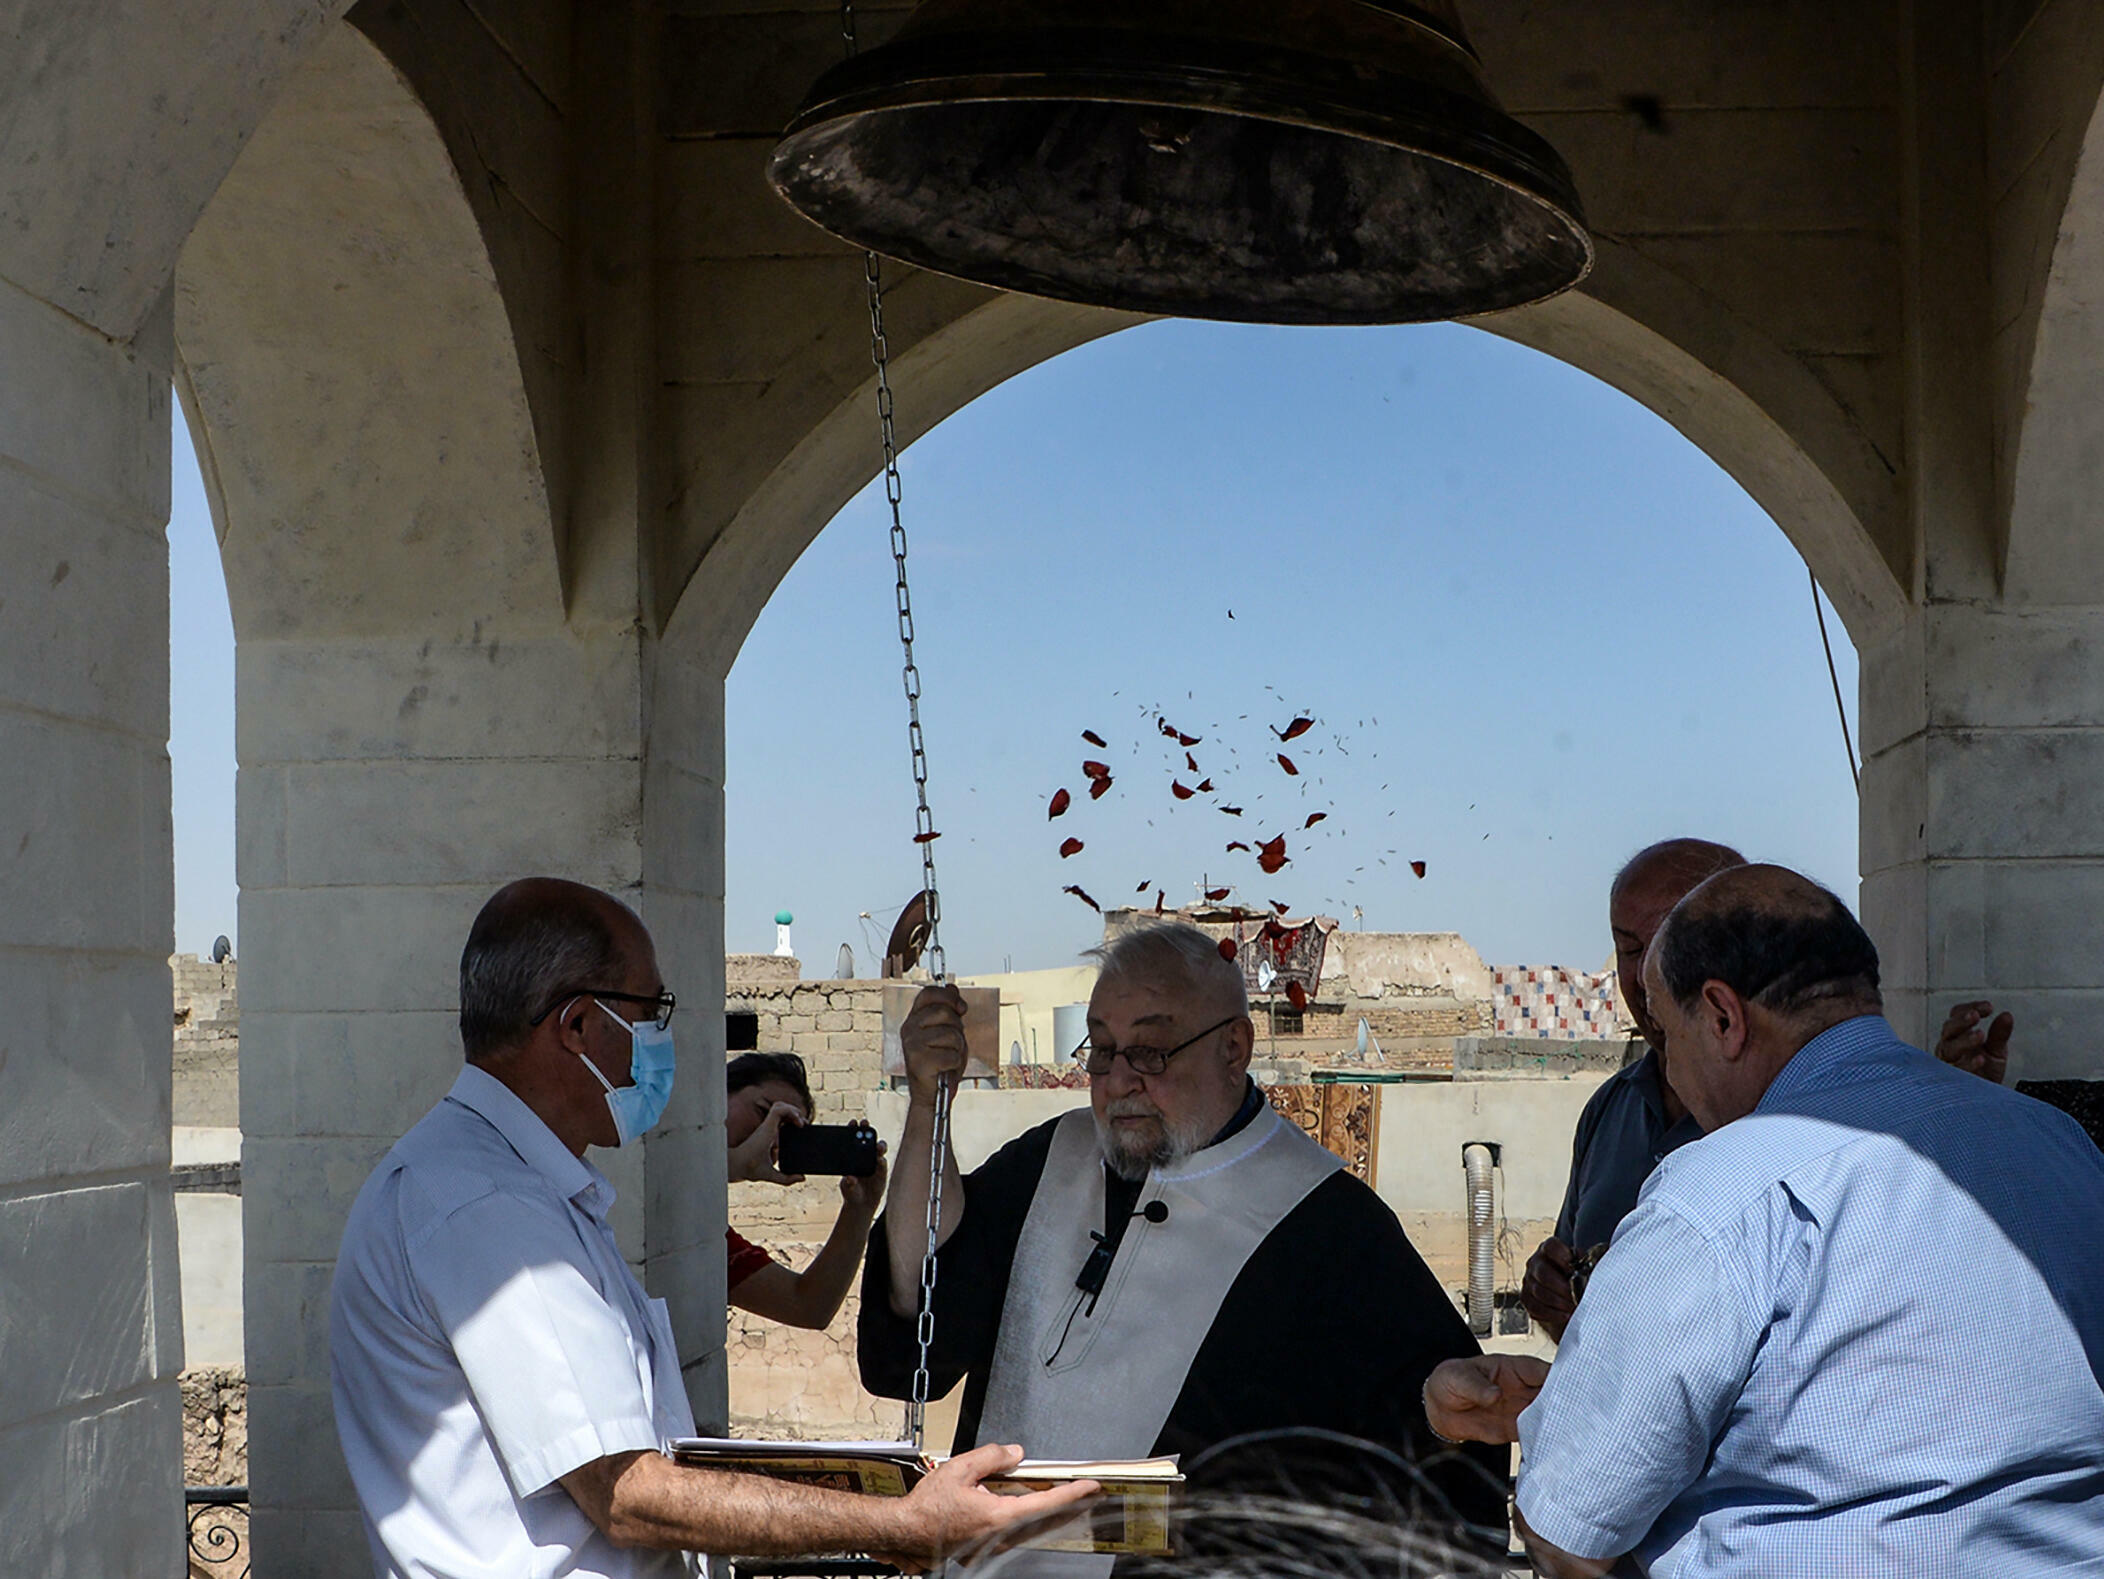 لأول مرة منذ 7 سنوات...اصوات جرس كنيسة الموصل يسمع والافراح تعم المدينة